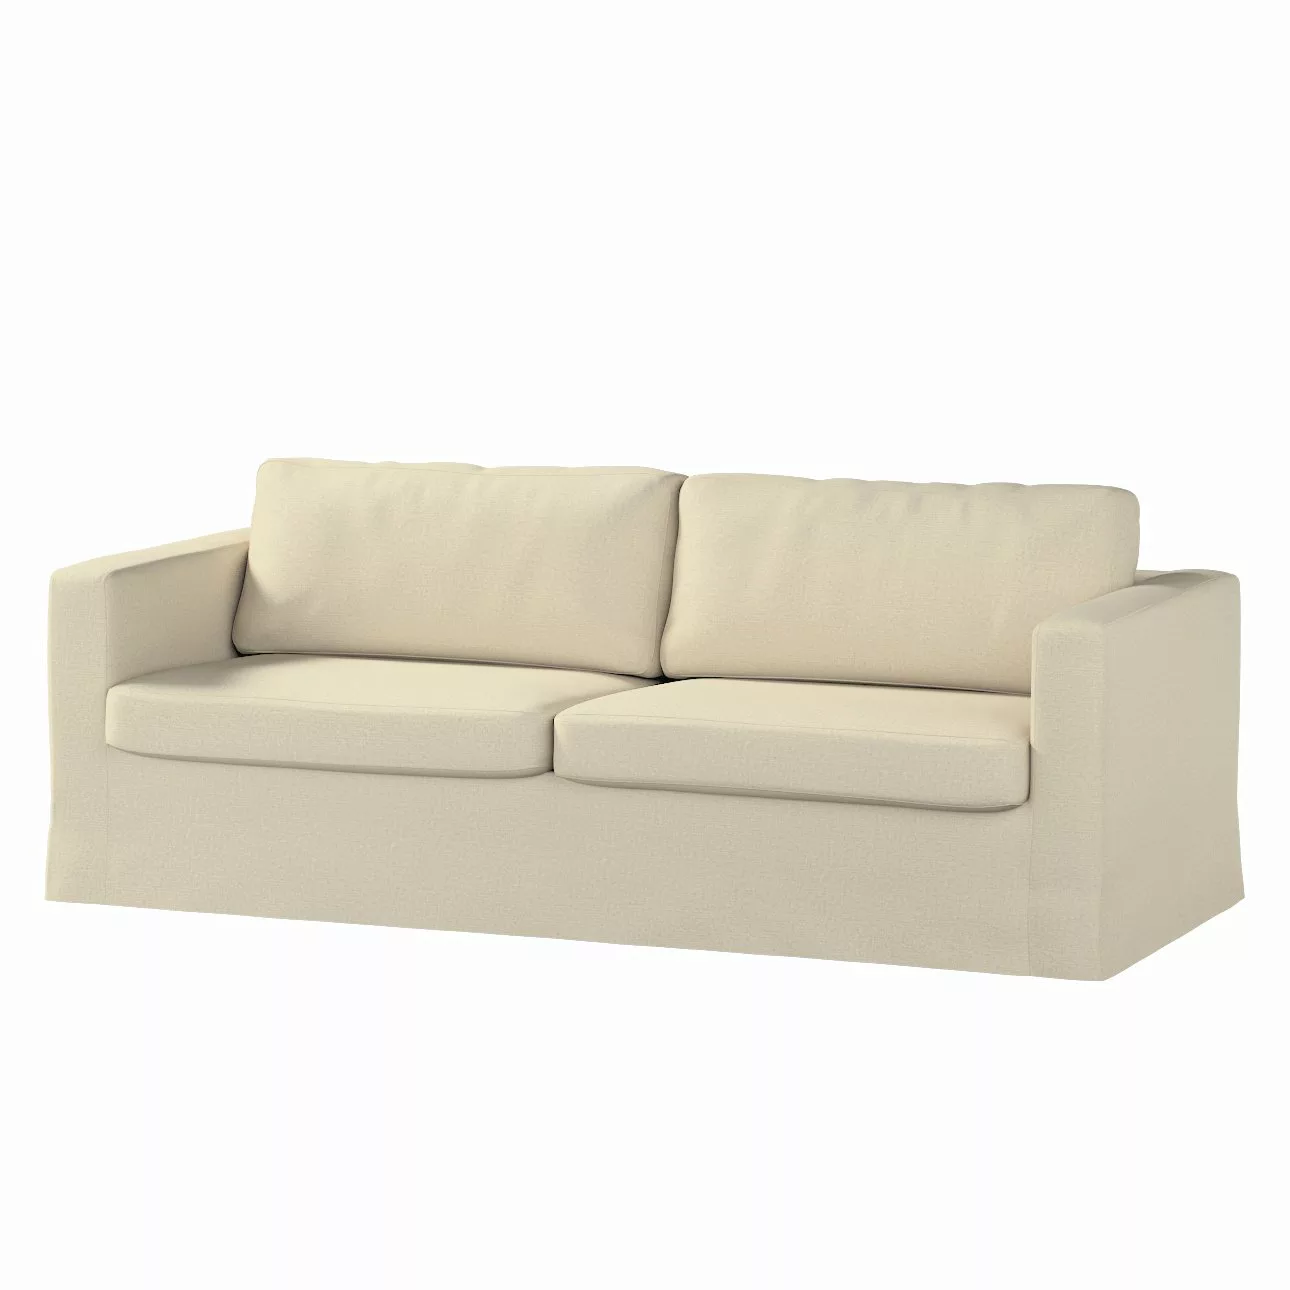 Bezug für Karlstad 3-Sitzer Sofa nicht ausklappbar, lang, ecru, Bezug für S günstig online kaufen